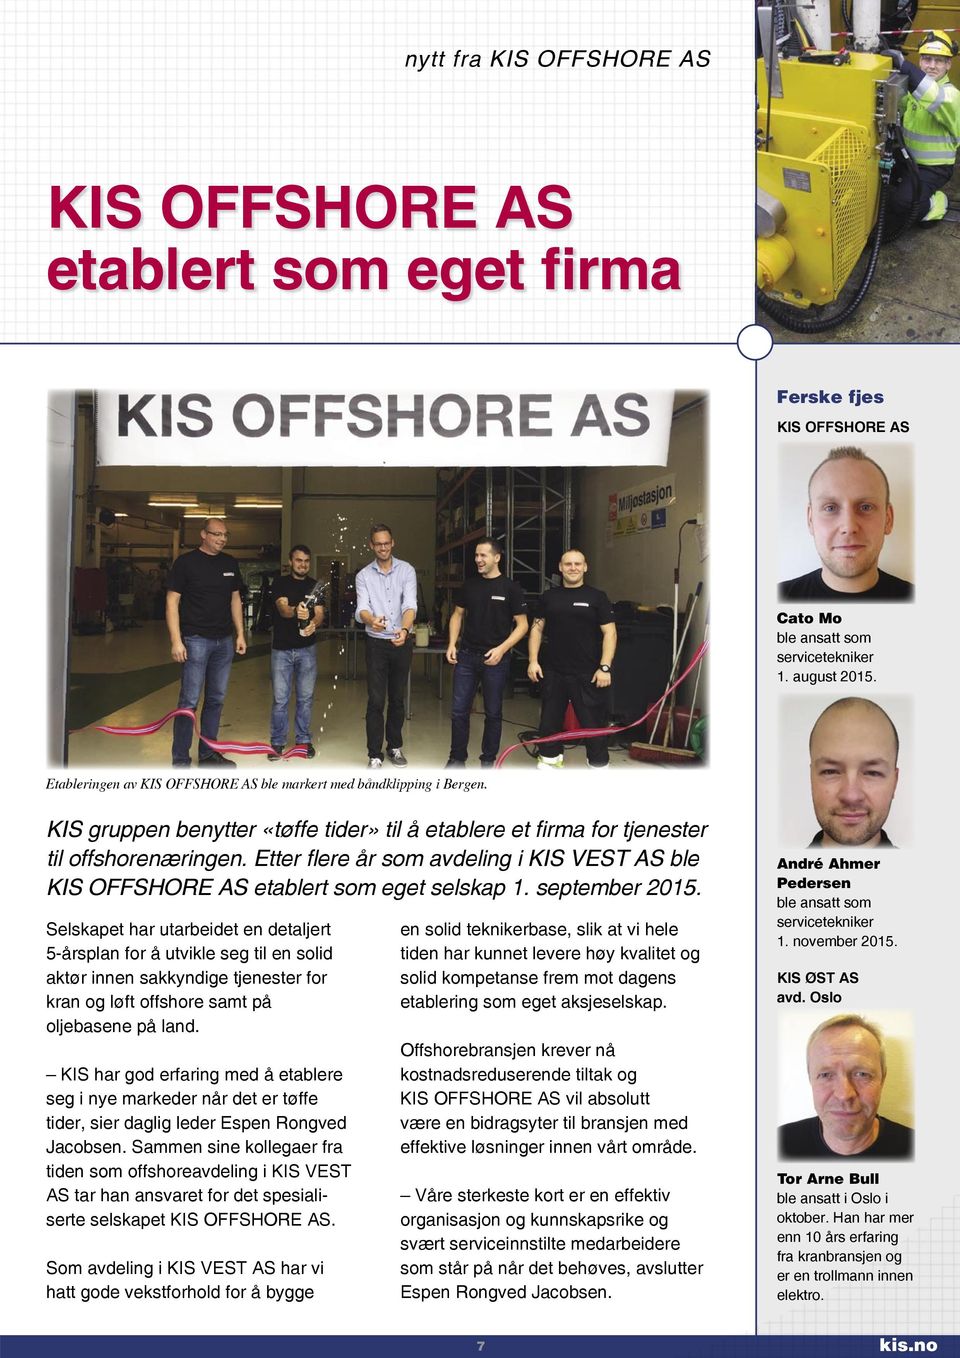 Etter flere år som avdeling i KIS VEST AS ble KIS OFFSHORE AS etablert som eget selskap 1. september 2015.